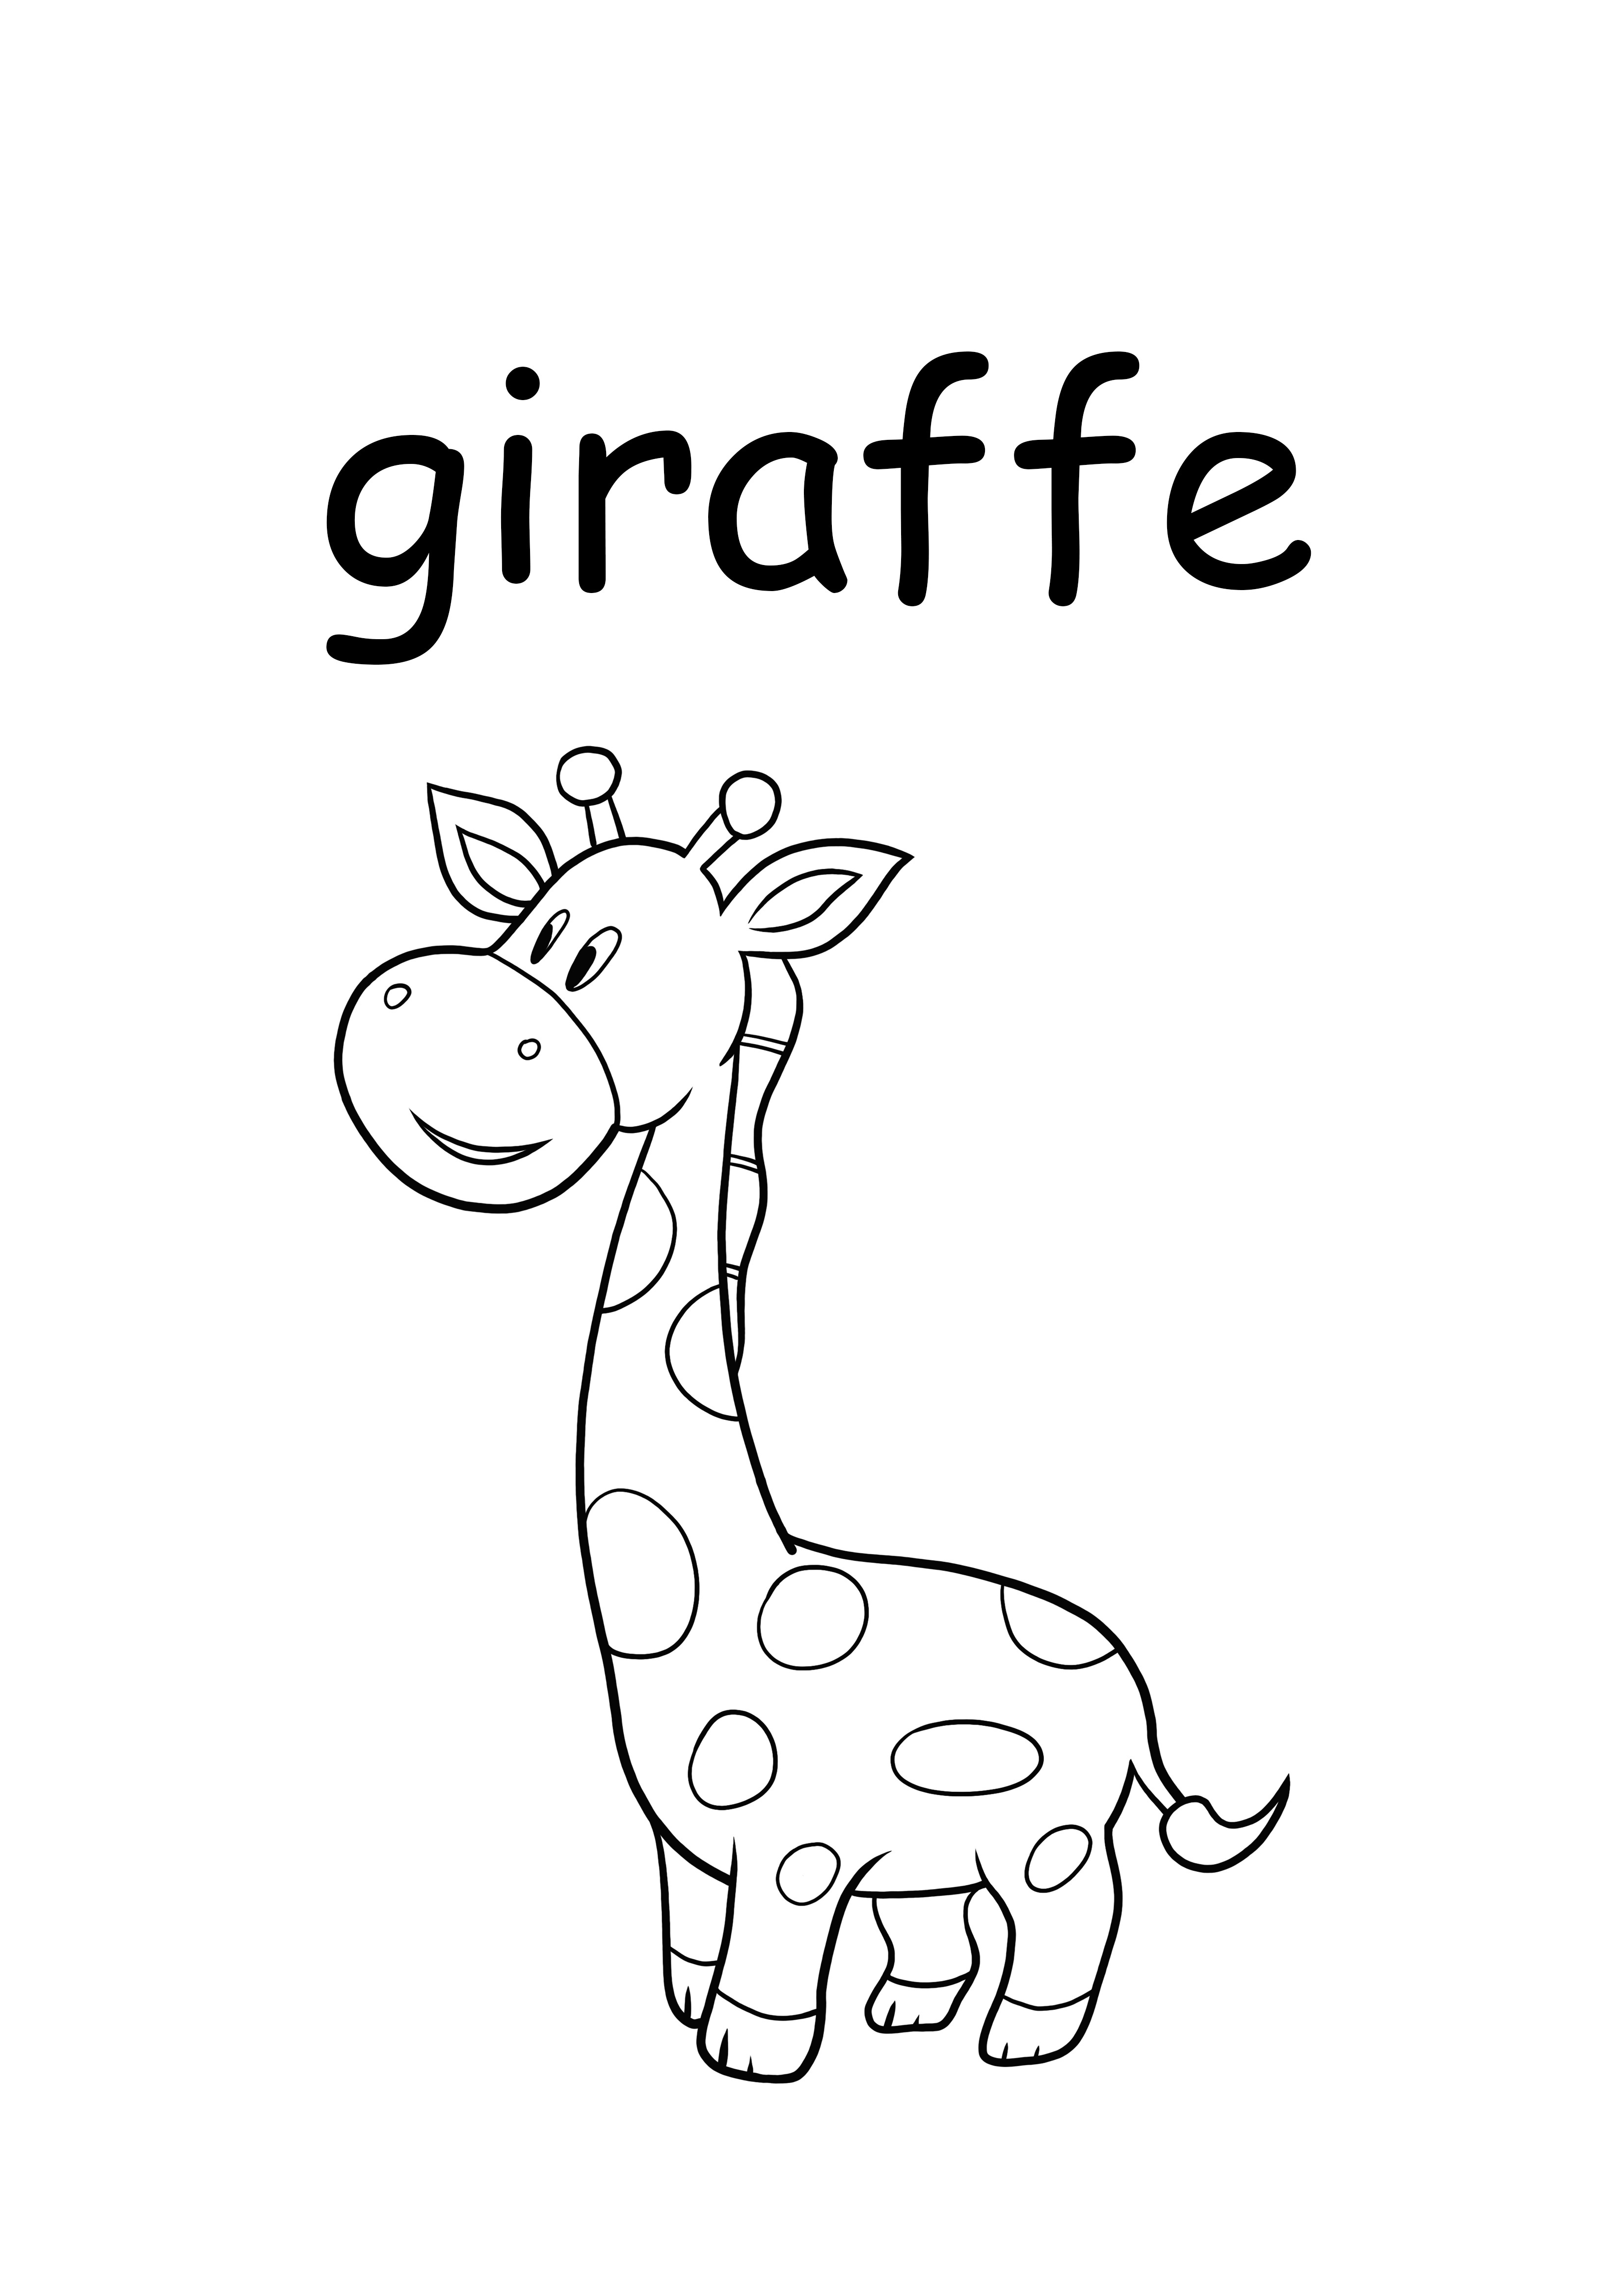 g dla żyrafy małe słowo do wydrukowania i pokolorowania!